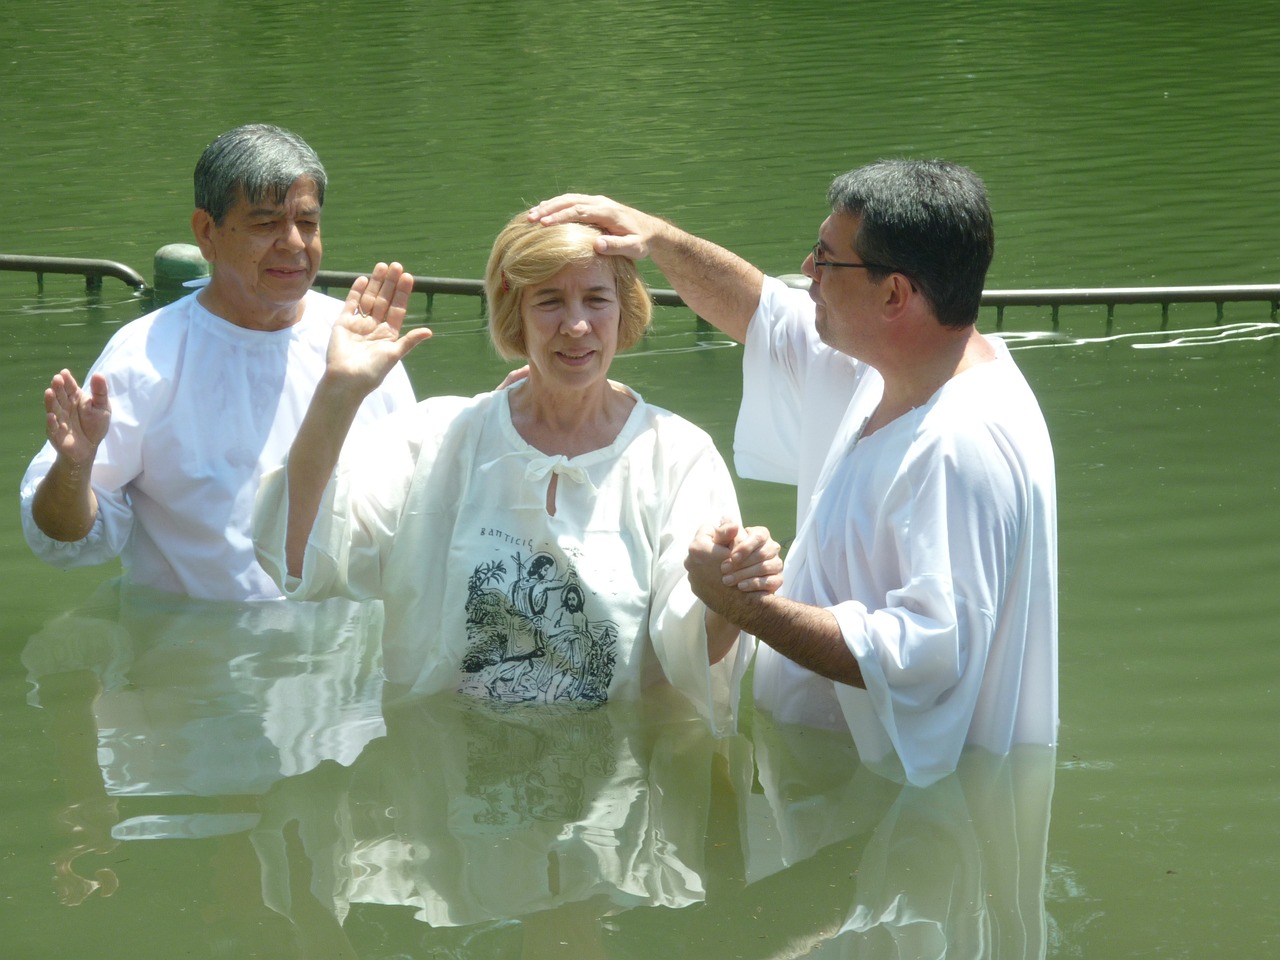 Alt=El bautismo por inmersión os hará libres